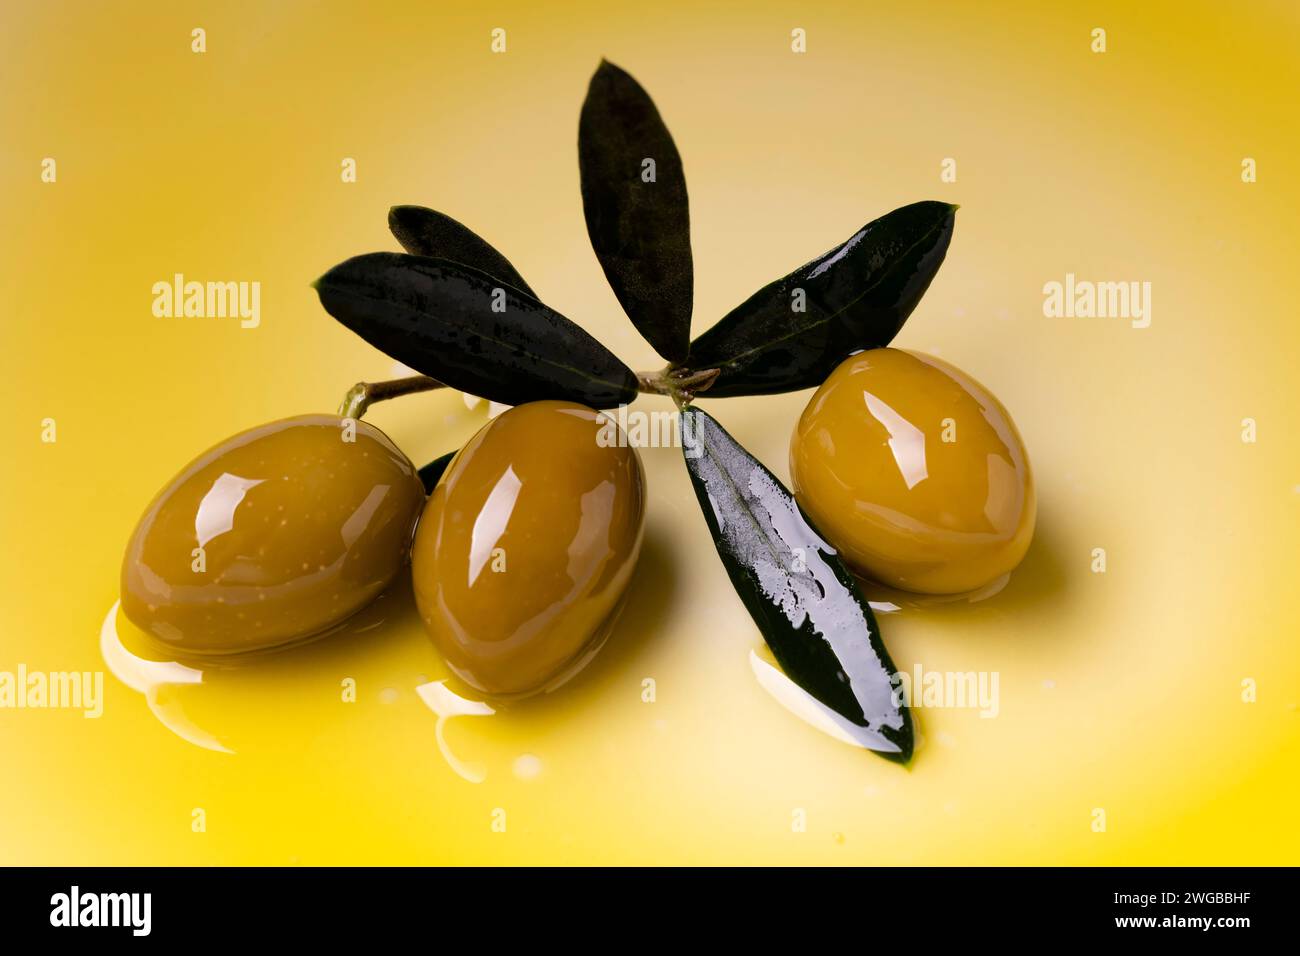 au premier plan 3 olives vertes et quelques feuilles d'olivier placées sur une couche d'huile d'olive extra vierge Banque D'Images